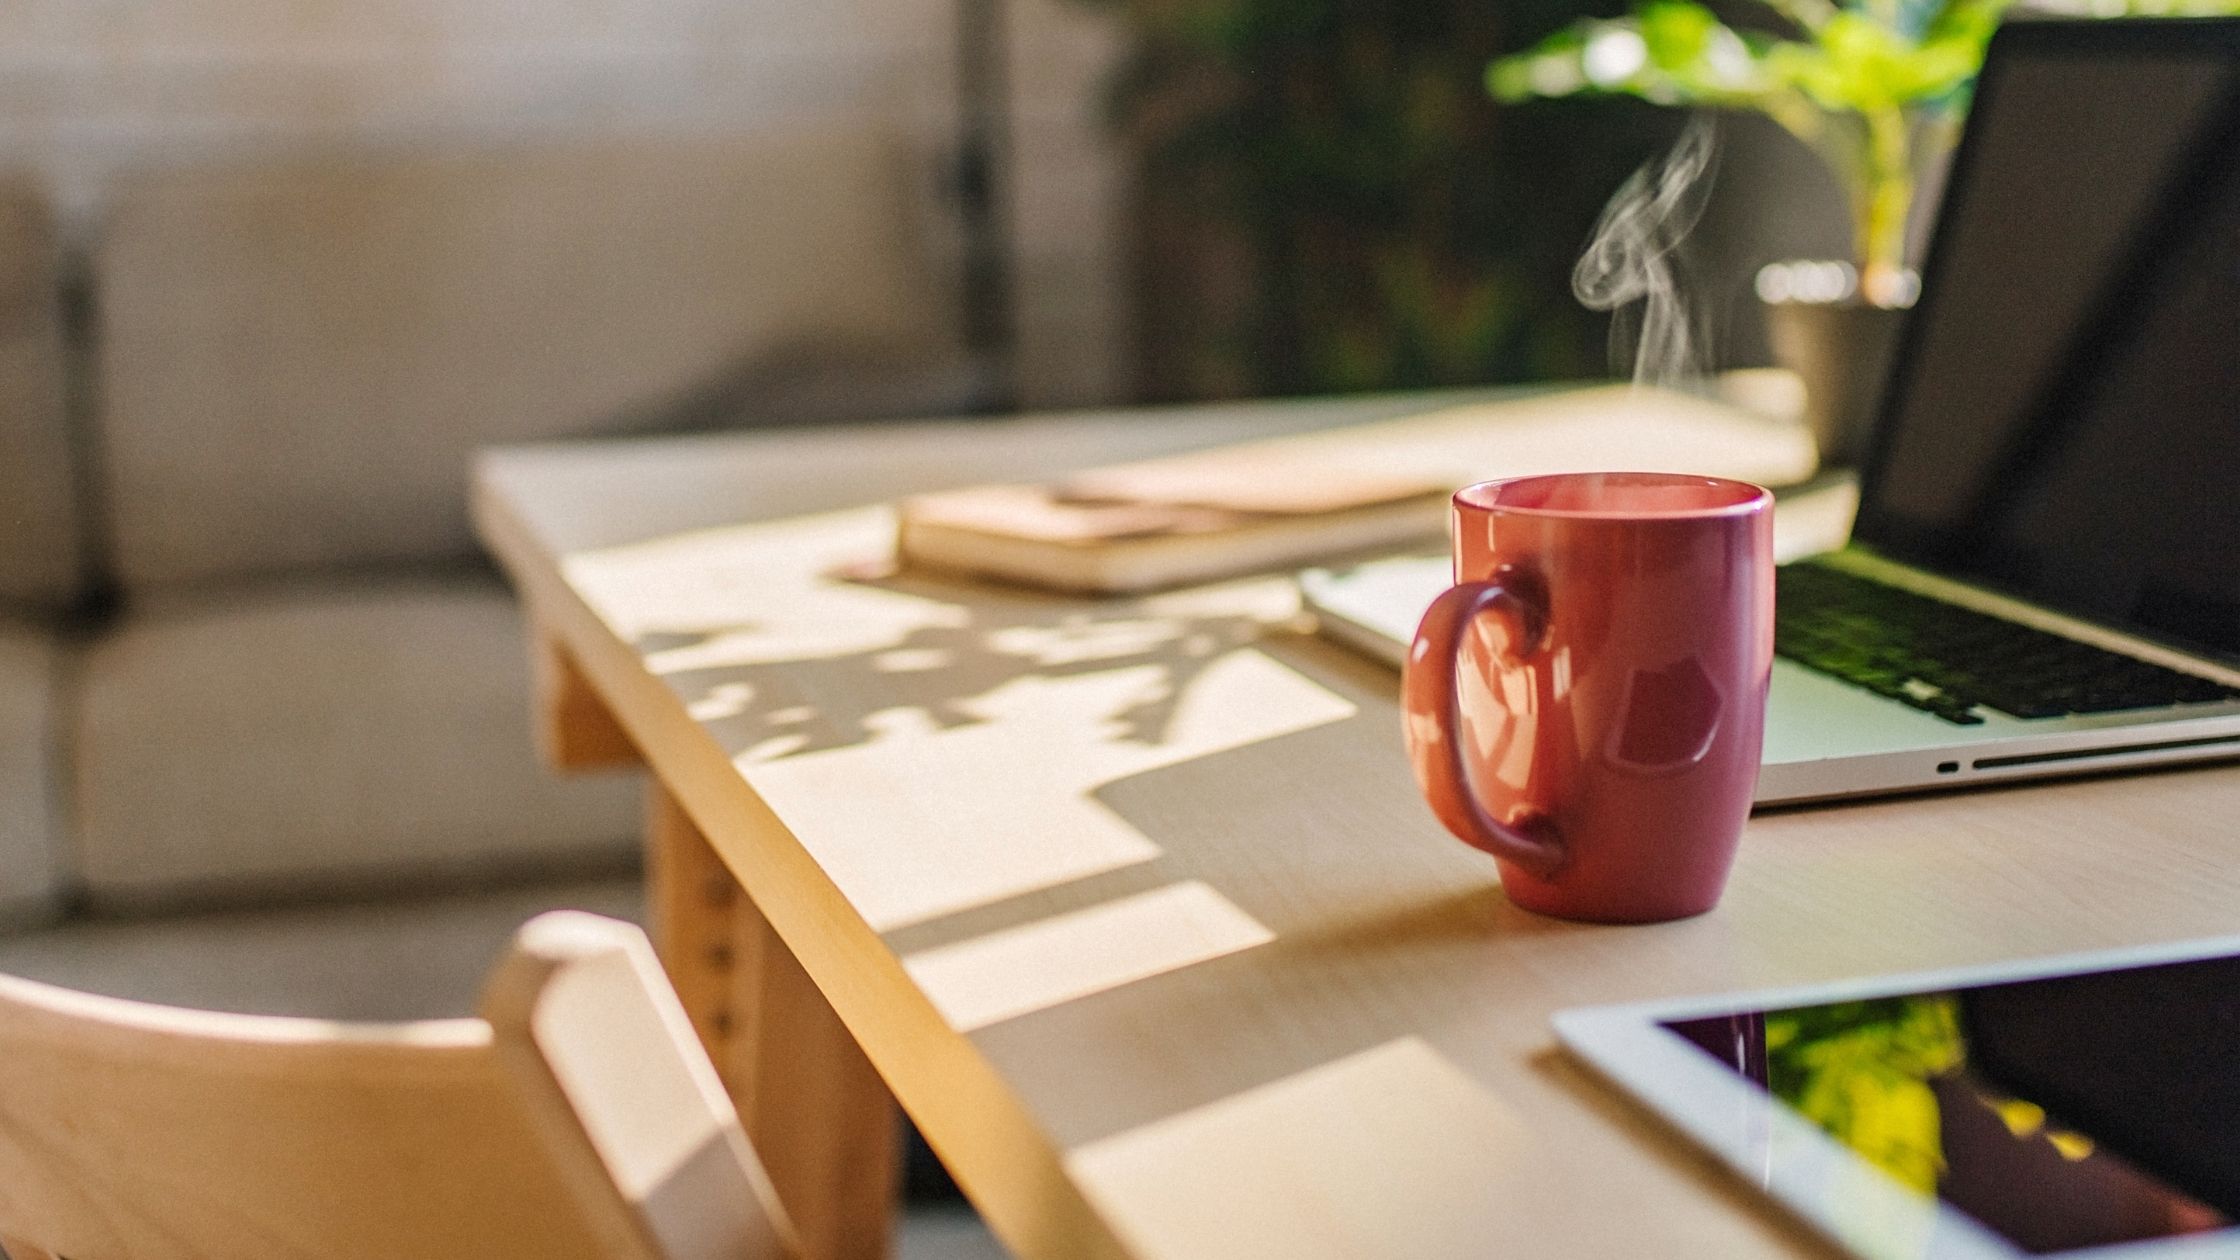 Coffee mug on desk